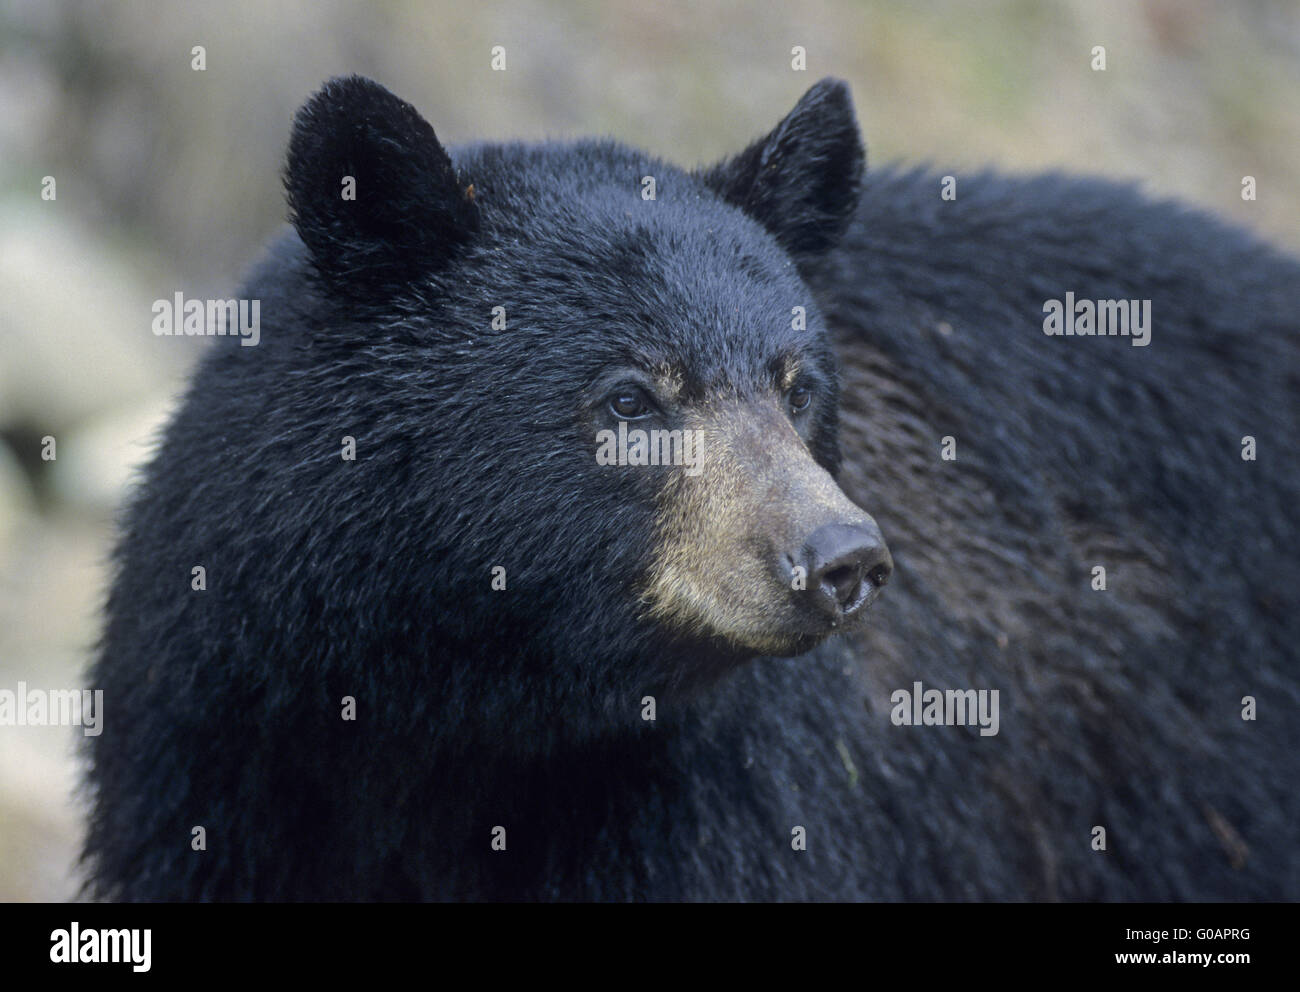 One Black Bear male in portrait Stock Photo